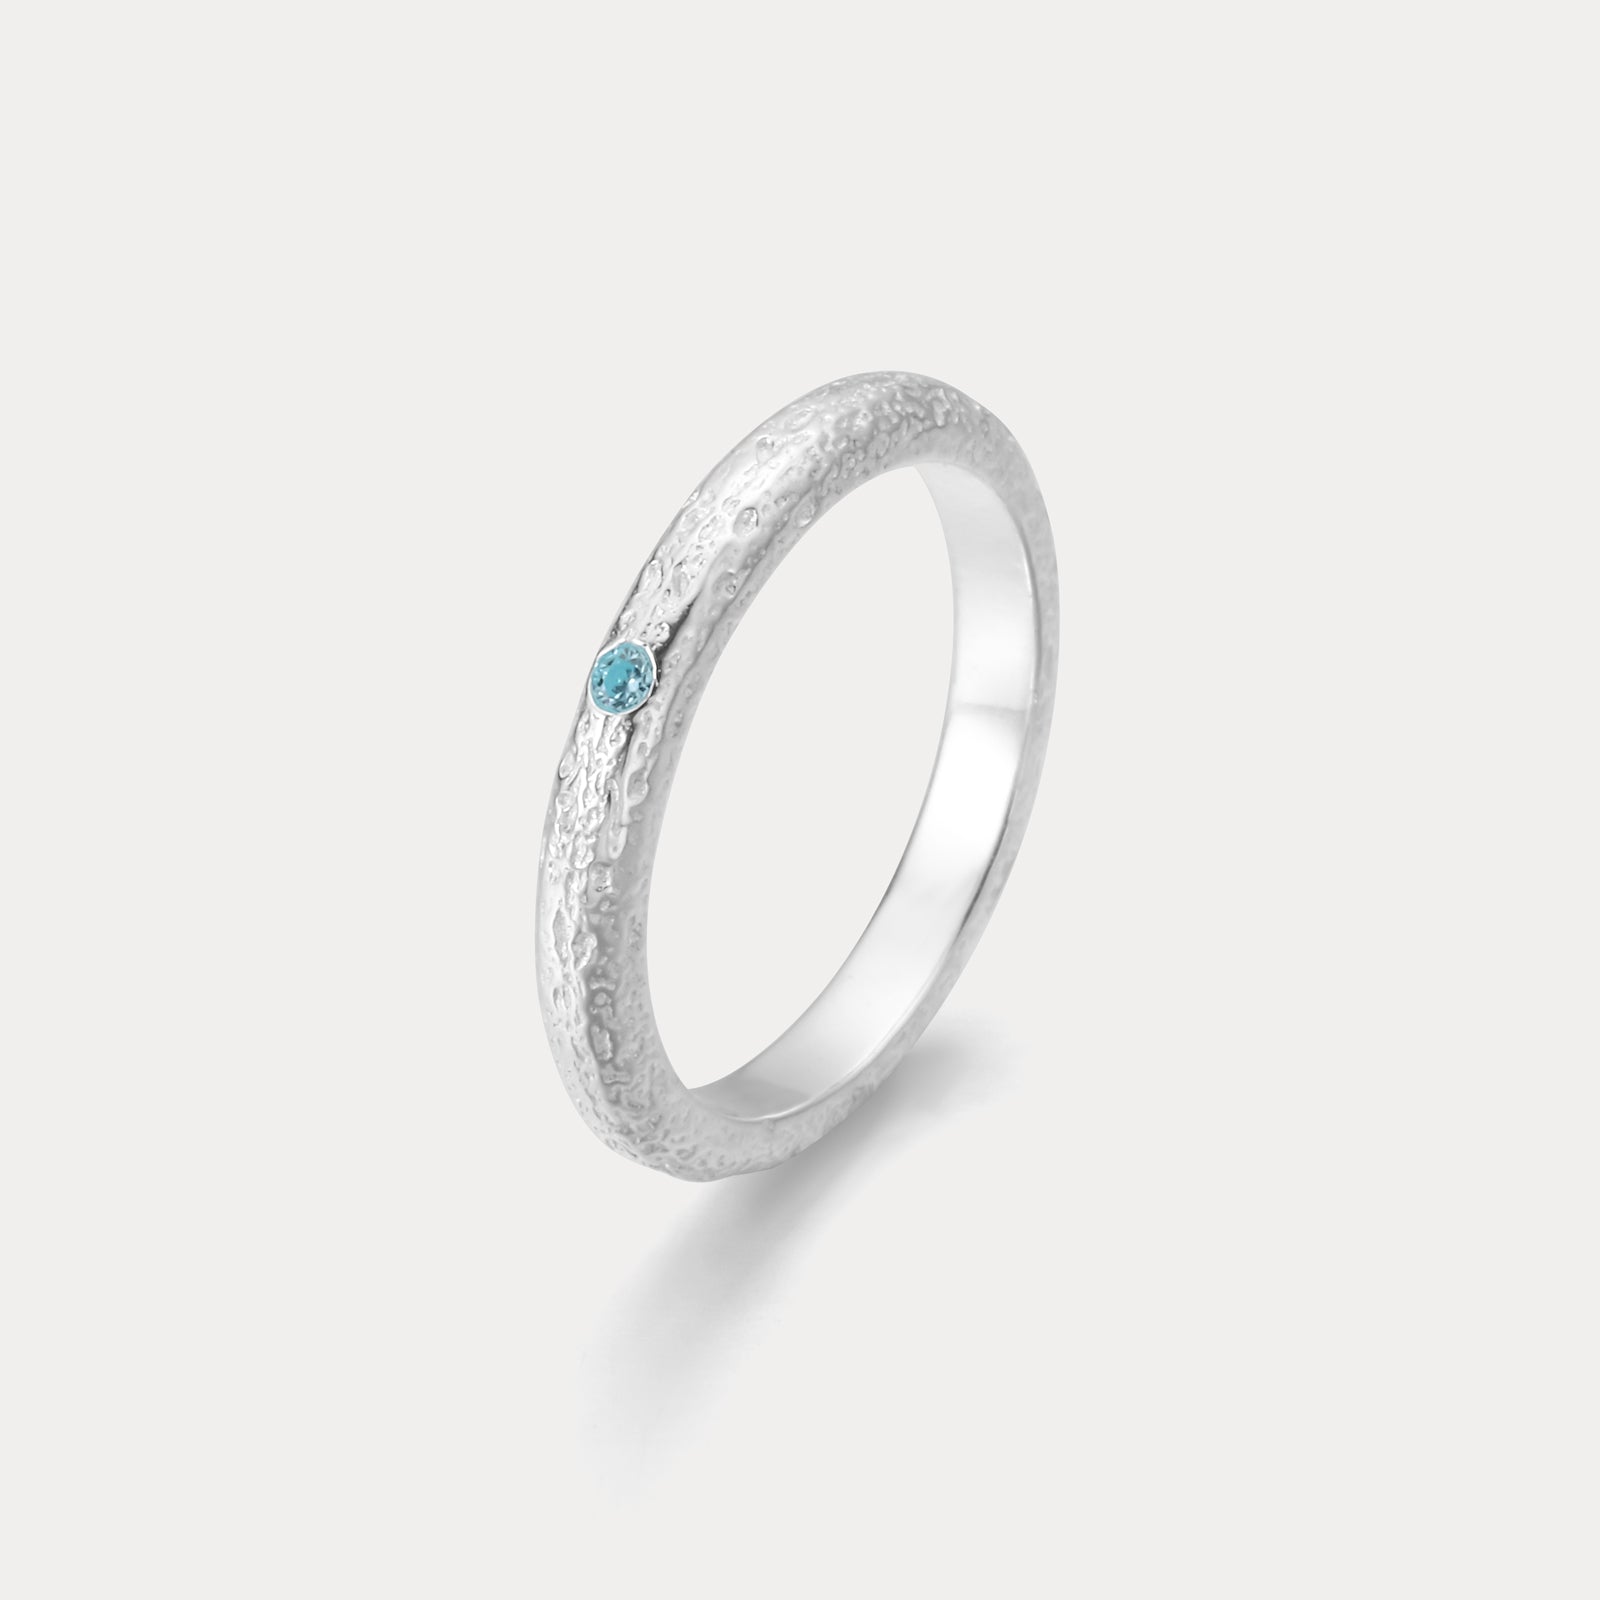 Selenichast Ocean Gemstone Ring